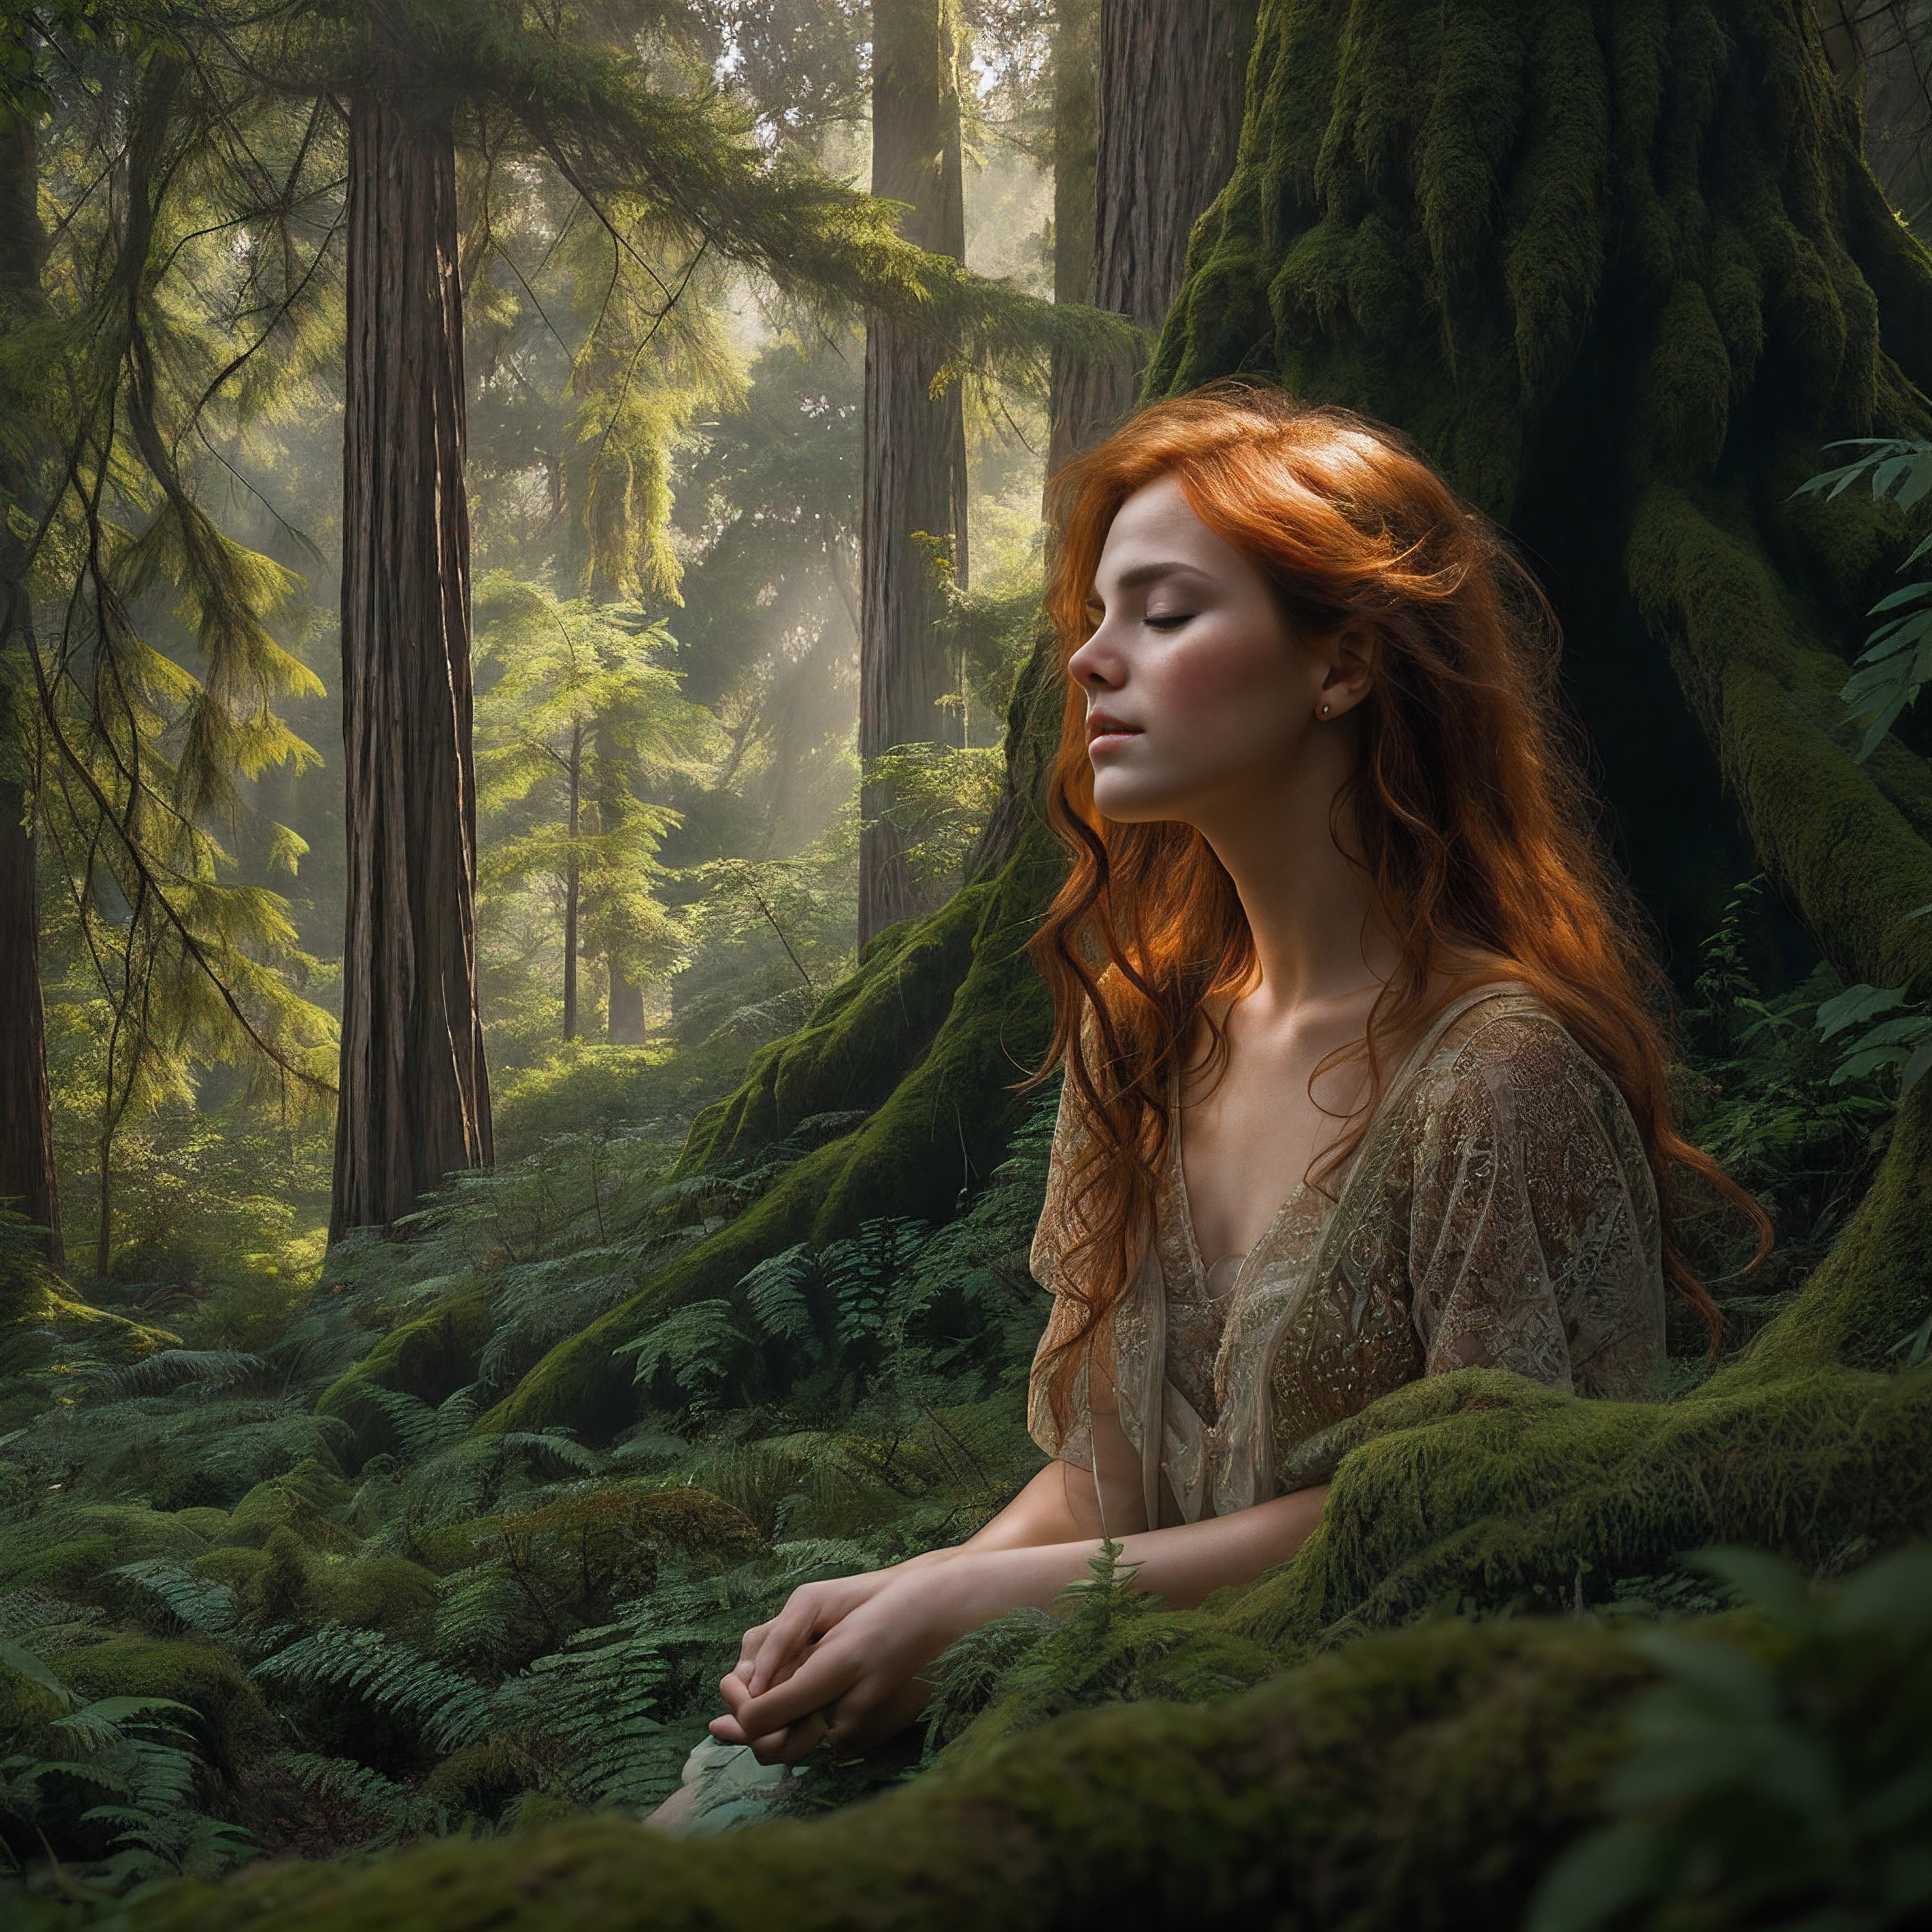 우뚝 솟은 고대 삼나무로 둘러싸인 울창한 숨겨진 숲 속에서 평화롭게 무릎을 꿇고 있는 아름다운 빨간 머리의 여성을 묘사한 절묘한 초상화, 머리 위로 솟아오른 캐노피를 통해 얼룩덜룩한 햇빛이 스며드는 동안 생각에 잠겨 눈을 감았습니다., 얼룩덜룩한 숲의 빛이 어루만지는 섬세한 이목구비, 숲 바닥을 뒤덮은 선명한 에메랄드 이끼에 톡톡 튀는 사랑스러운 주근깨로 장식된 결점 없는 피부, 비와 삼나무의 흙내음을 풍기는 부드러운 숲 바람에 부드럽게 부는 불 같은 자물쇠, 순수 예술 사진 인쇄 스타일로 훌륭하게 구성되었습니다., 영화 스틸처럼 풍부하고 분위기 있는 분위기, 복잡한 질감과 필름 그레인이 완벽하게 통합되어 이 원시림 보호구역의 심오한 아름다움을 포착합니다., 세부 사항에 특별한 관심을 기울여 훌륭하게 실행되는 전반적인 장인 정신, 이 놀라운 디지털 그림은 포토리얼리즘과 상상력이 풍부한 예술성을 결합합니다..